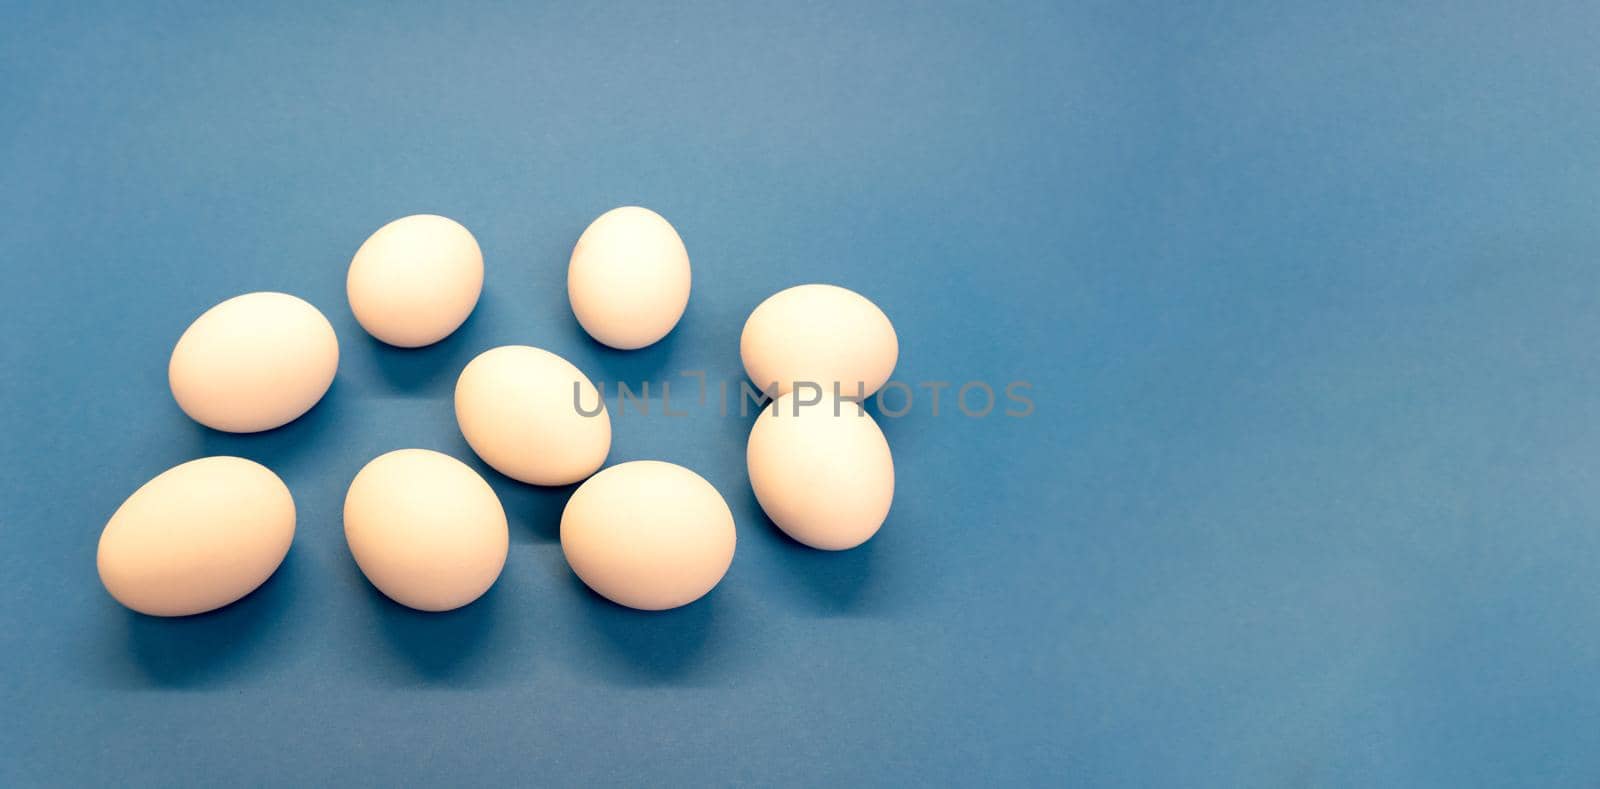 Nine white chicken eggs on blue background, by uveita